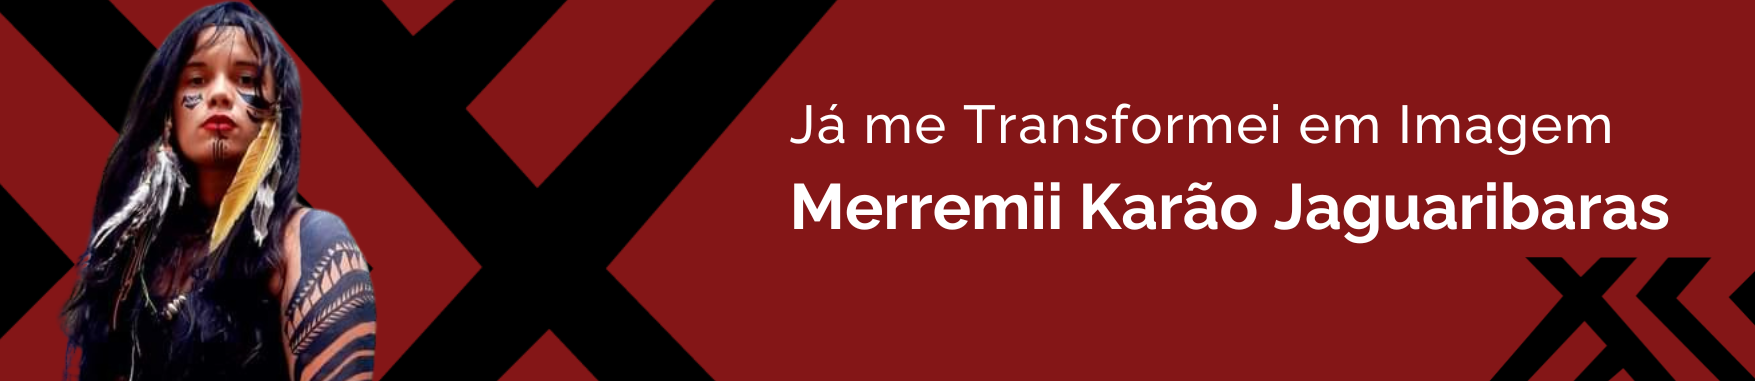 Banner com a imagem de Merremii Karão Jaguaribaras